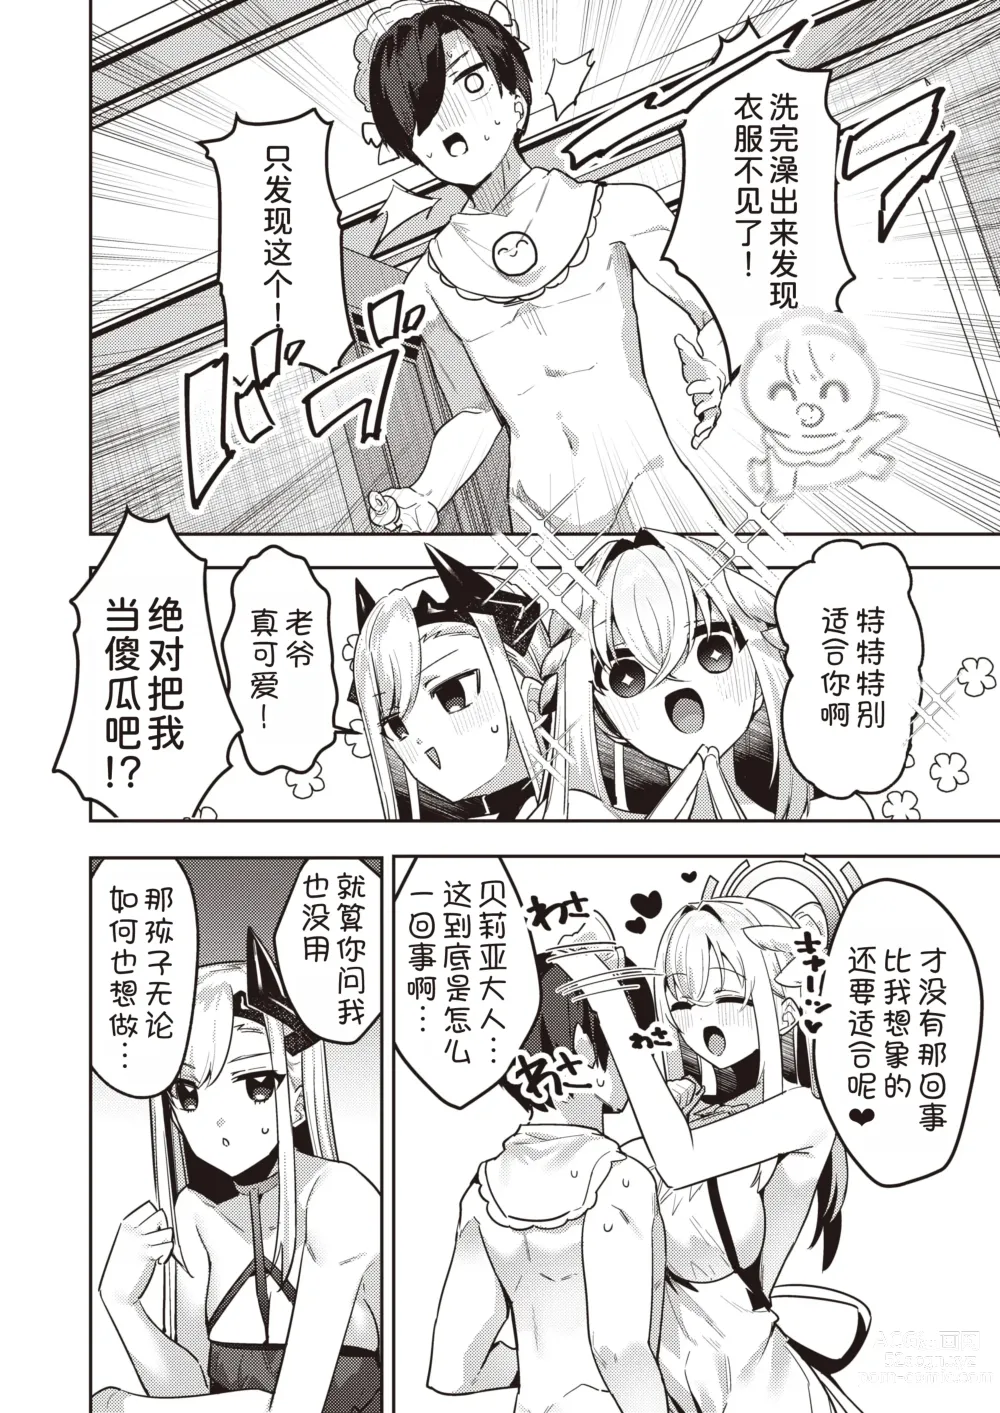 Page 3 of manga Chotto Yabai Megami to Maou to Amayakababubabu Suru no wa Dame desu ka?